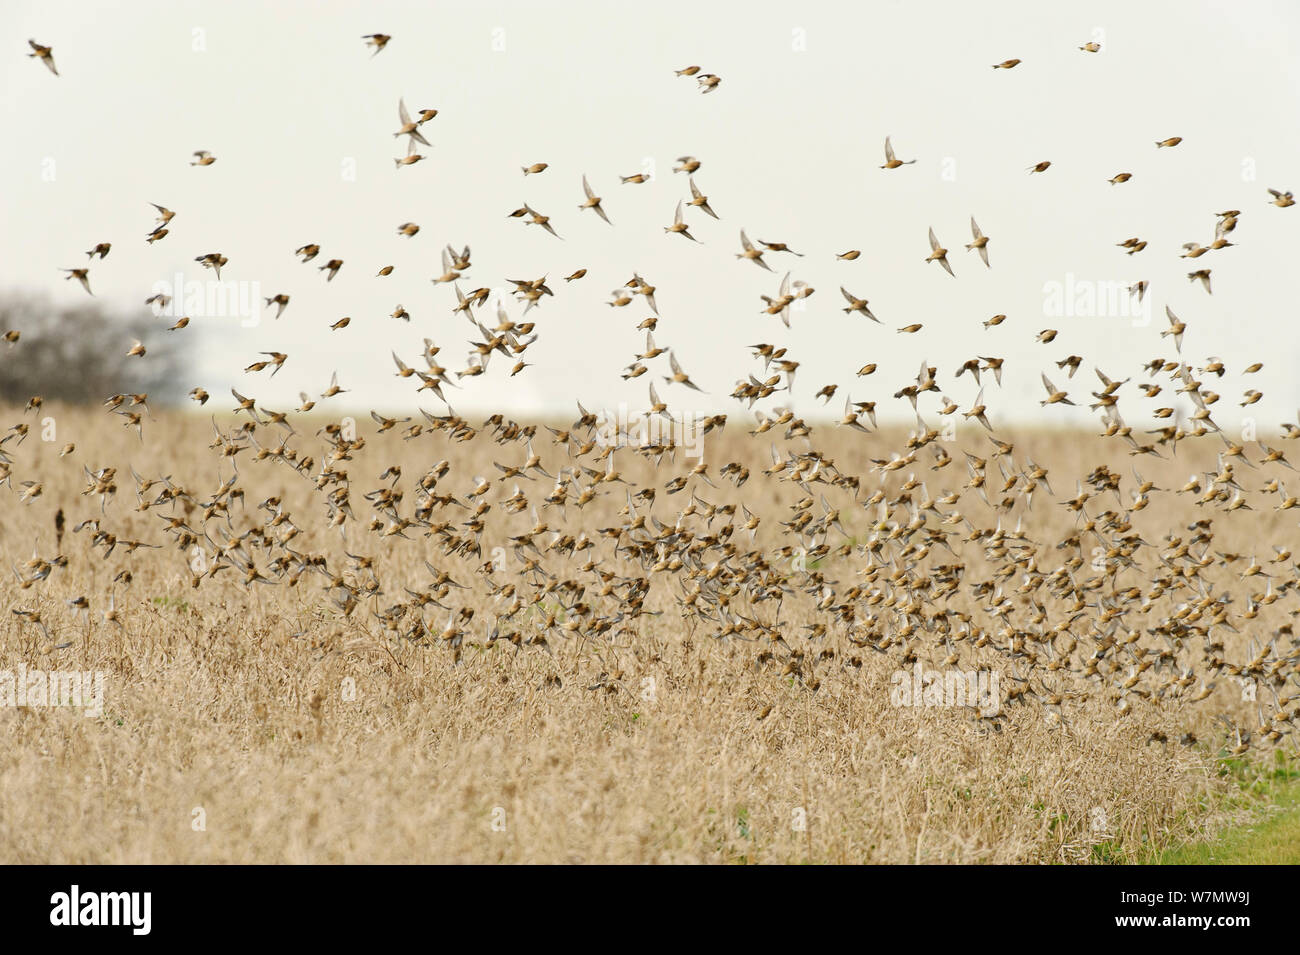 Herde Hänflinge (Carduelis cannabina) fliegen nach der Fütterung auf Erhaltung des Ernteguts für Ackerland Vögel gewachsen, elmley Naturschutzgebiet, Kent, England, UK, Februar. Stockfoto